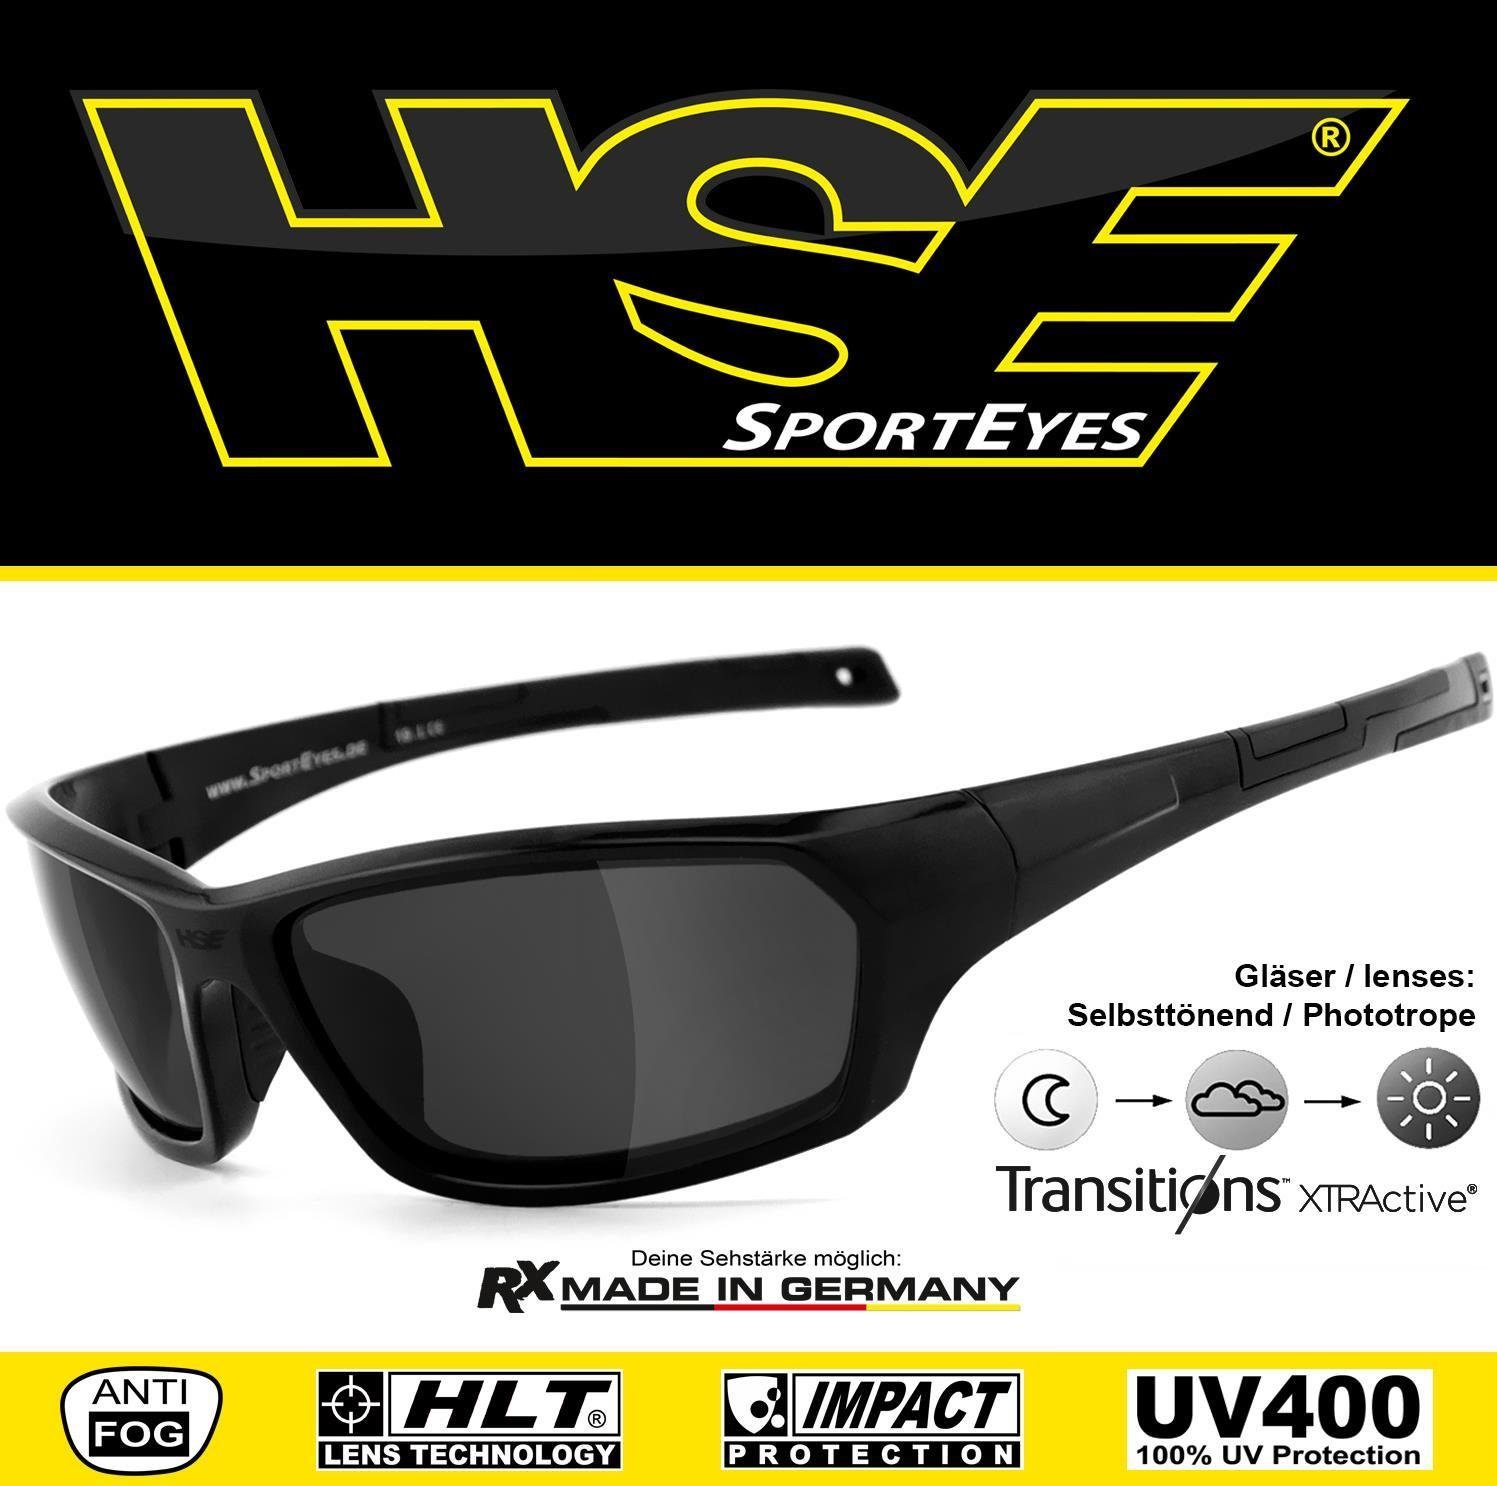 Sportbrille - Gläser HSE SportEyes selbsttönend, AIR-STREAM - Selbsttönende